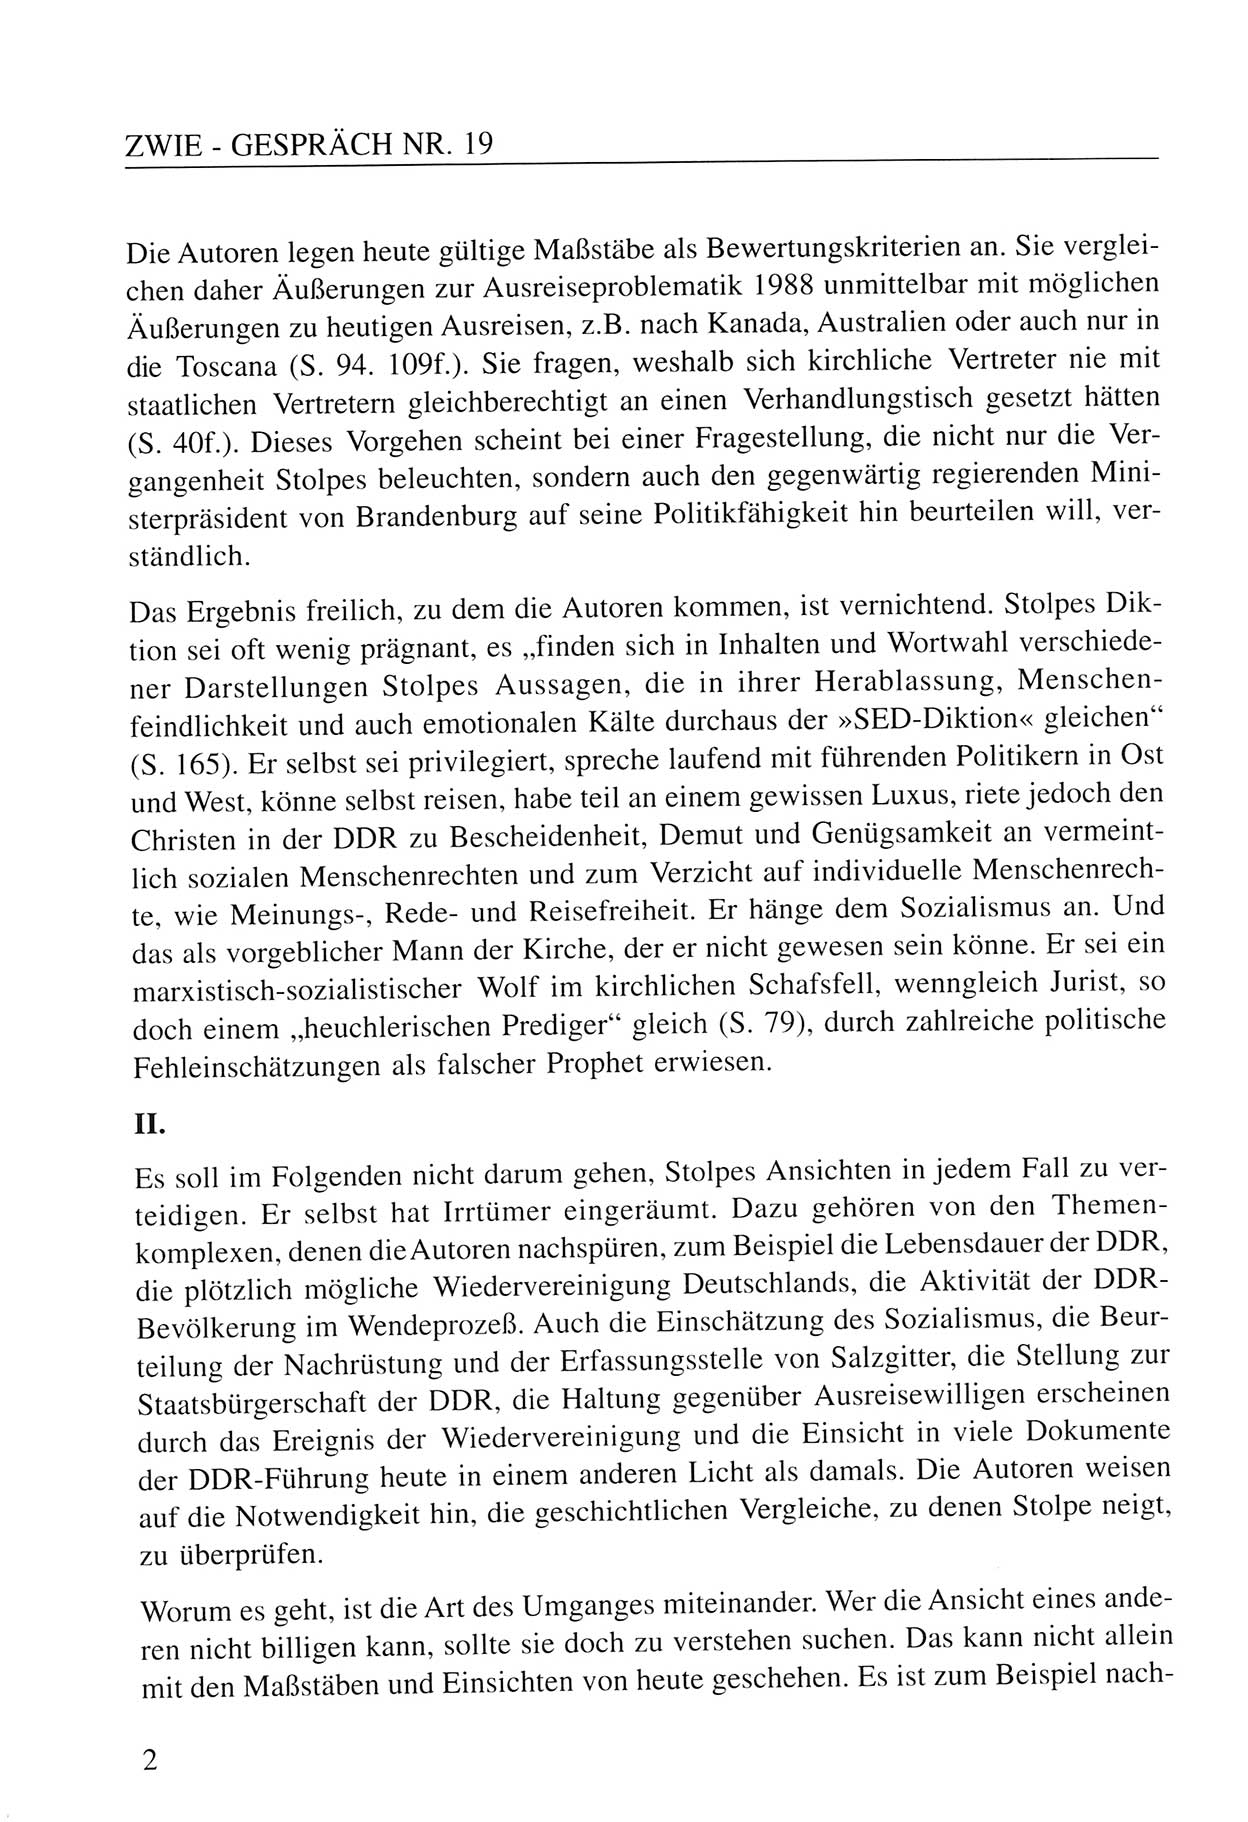 Zwie-Gespräch, Beiträge zum Umgang mit der Staatssicherheits-Vergangenheit [Deutsche Demokratische Republik (DDR)], Ausgabe Nr. 19, Berlin 1994, Seite 2 (Zwie-Gespr. Ausg. 19 1994, S. 2)